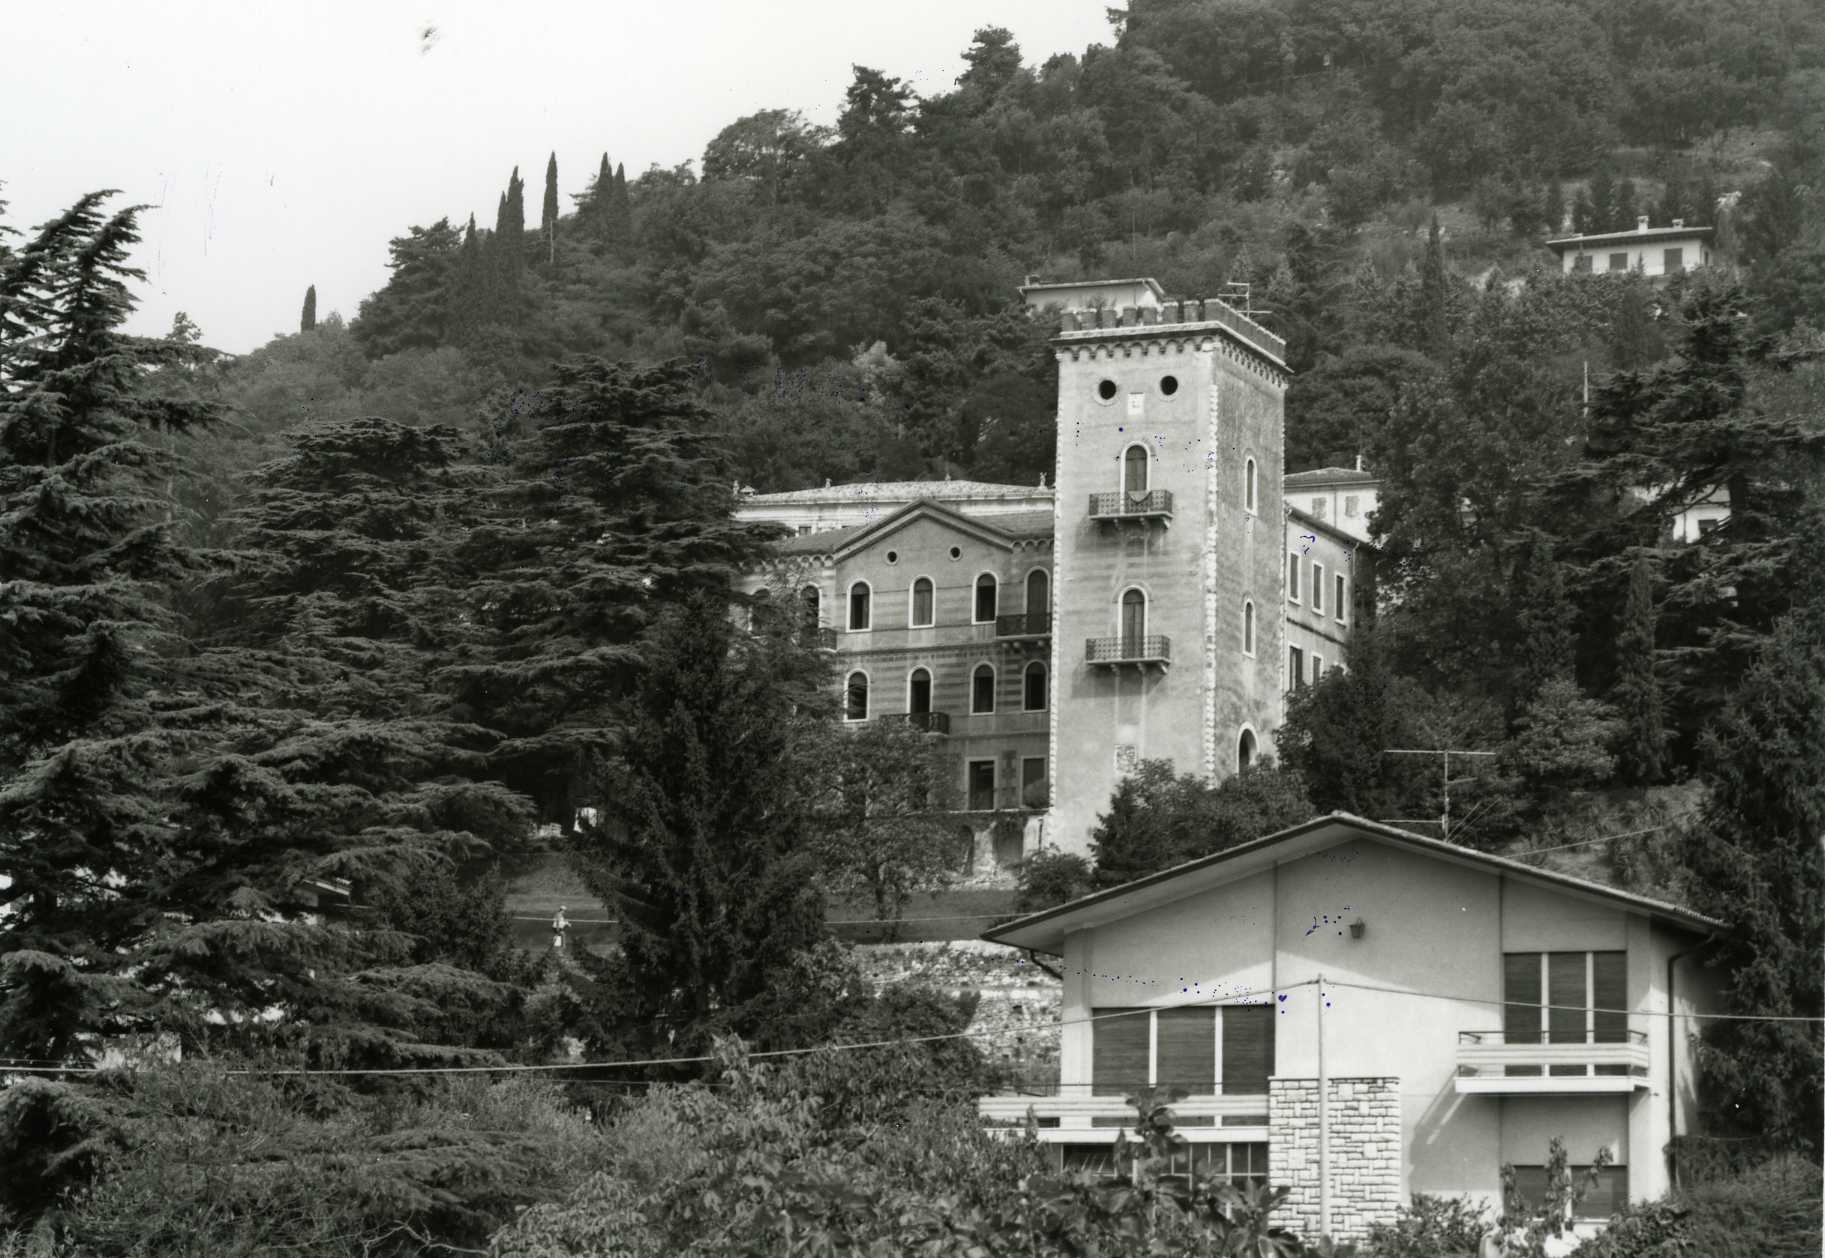 Villa Trabucchi (villa, padronale) - Cavaion Veronese (VR)  (XVII, fine)